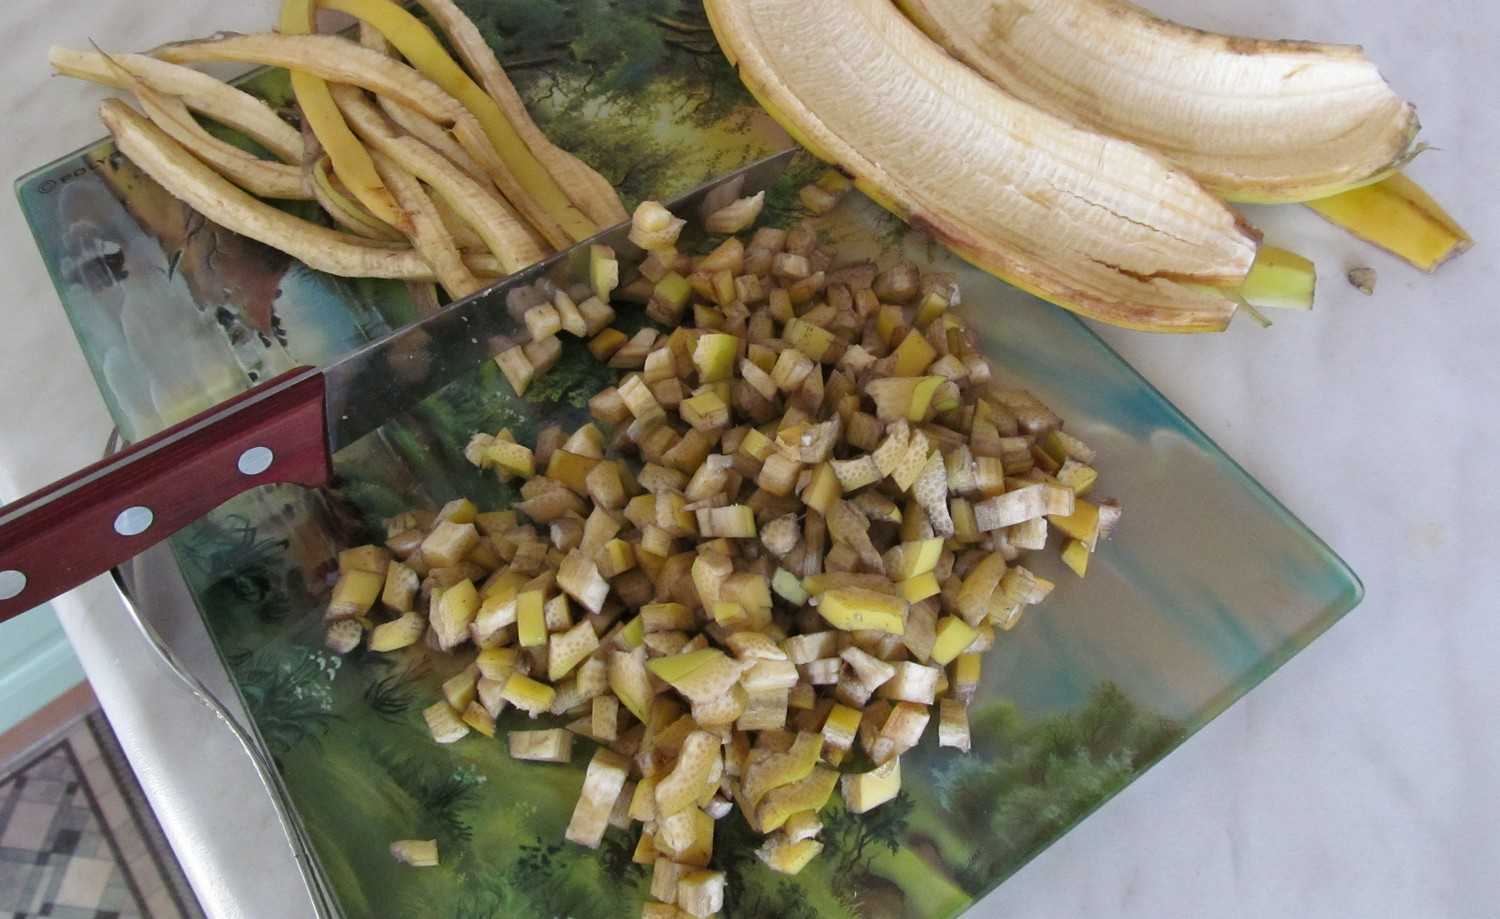 Банановая кожура как удобрение для рассады помидор. Банановая кожура. Удобрение из банановой кожуры. Настой банановой кожуры. Удобрение из корок банана для рассады.